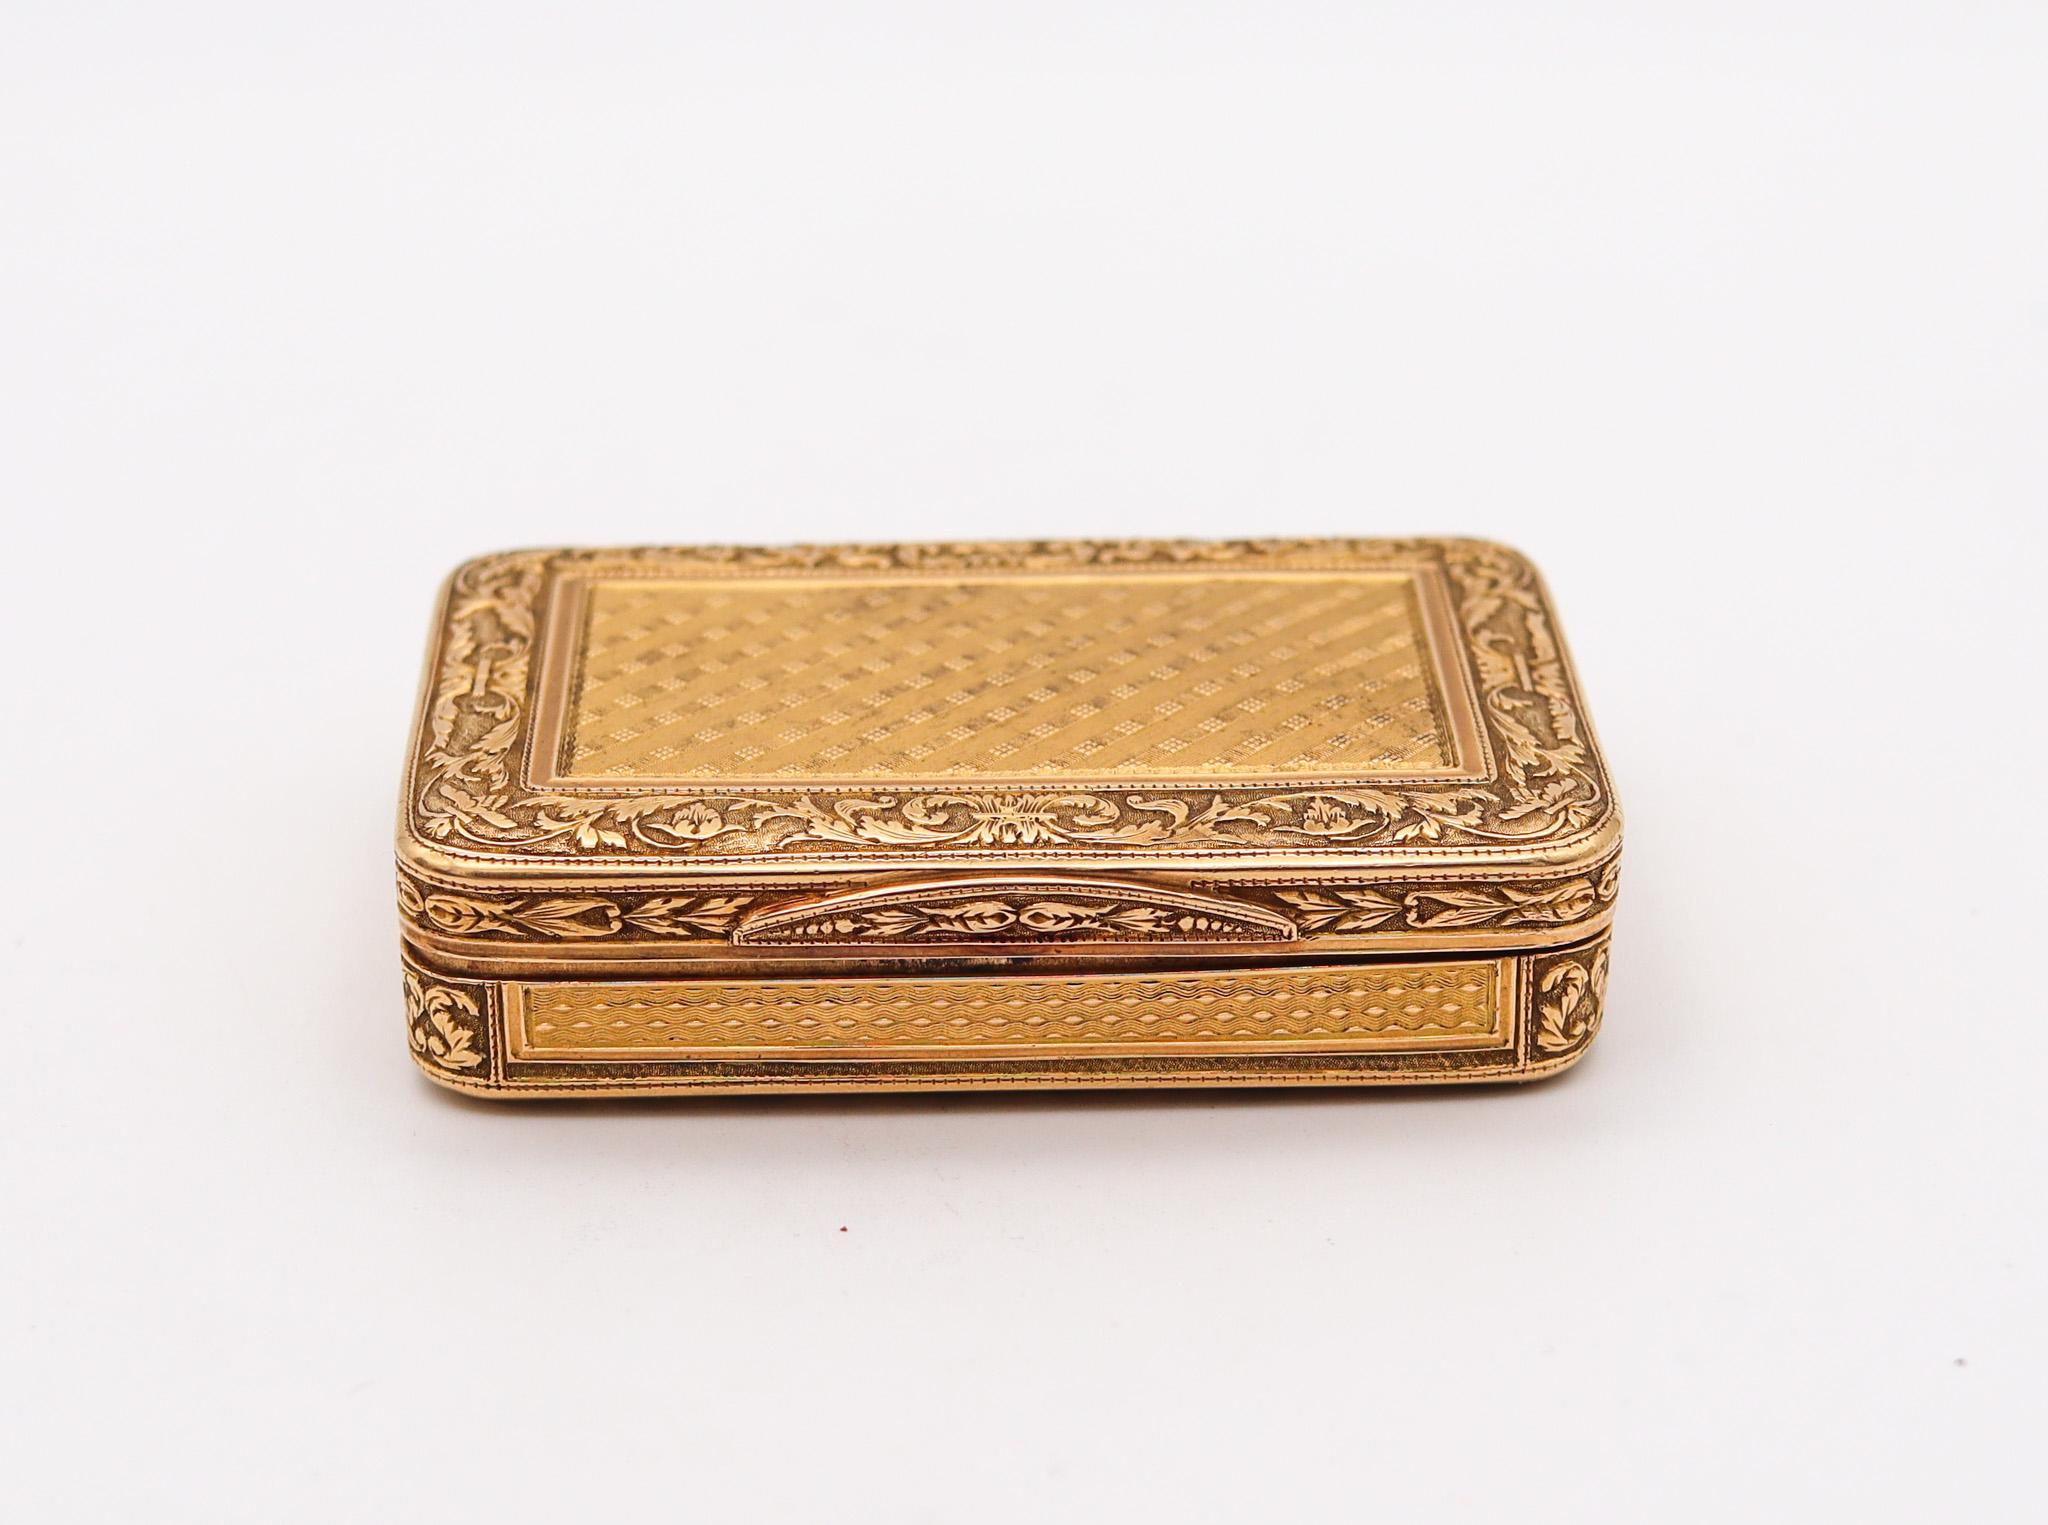 Französische Schnupftabakdose aus massivem Gold.

Außergewöhnliche rechteckige Schnupftabakdose, die im letzten Viertel des 18. Jahrhunderts, ca. 1790, in Paris während des Königreichs von Ludwig XVI. geschaffen wurde. Sie wurde sorgfältig im